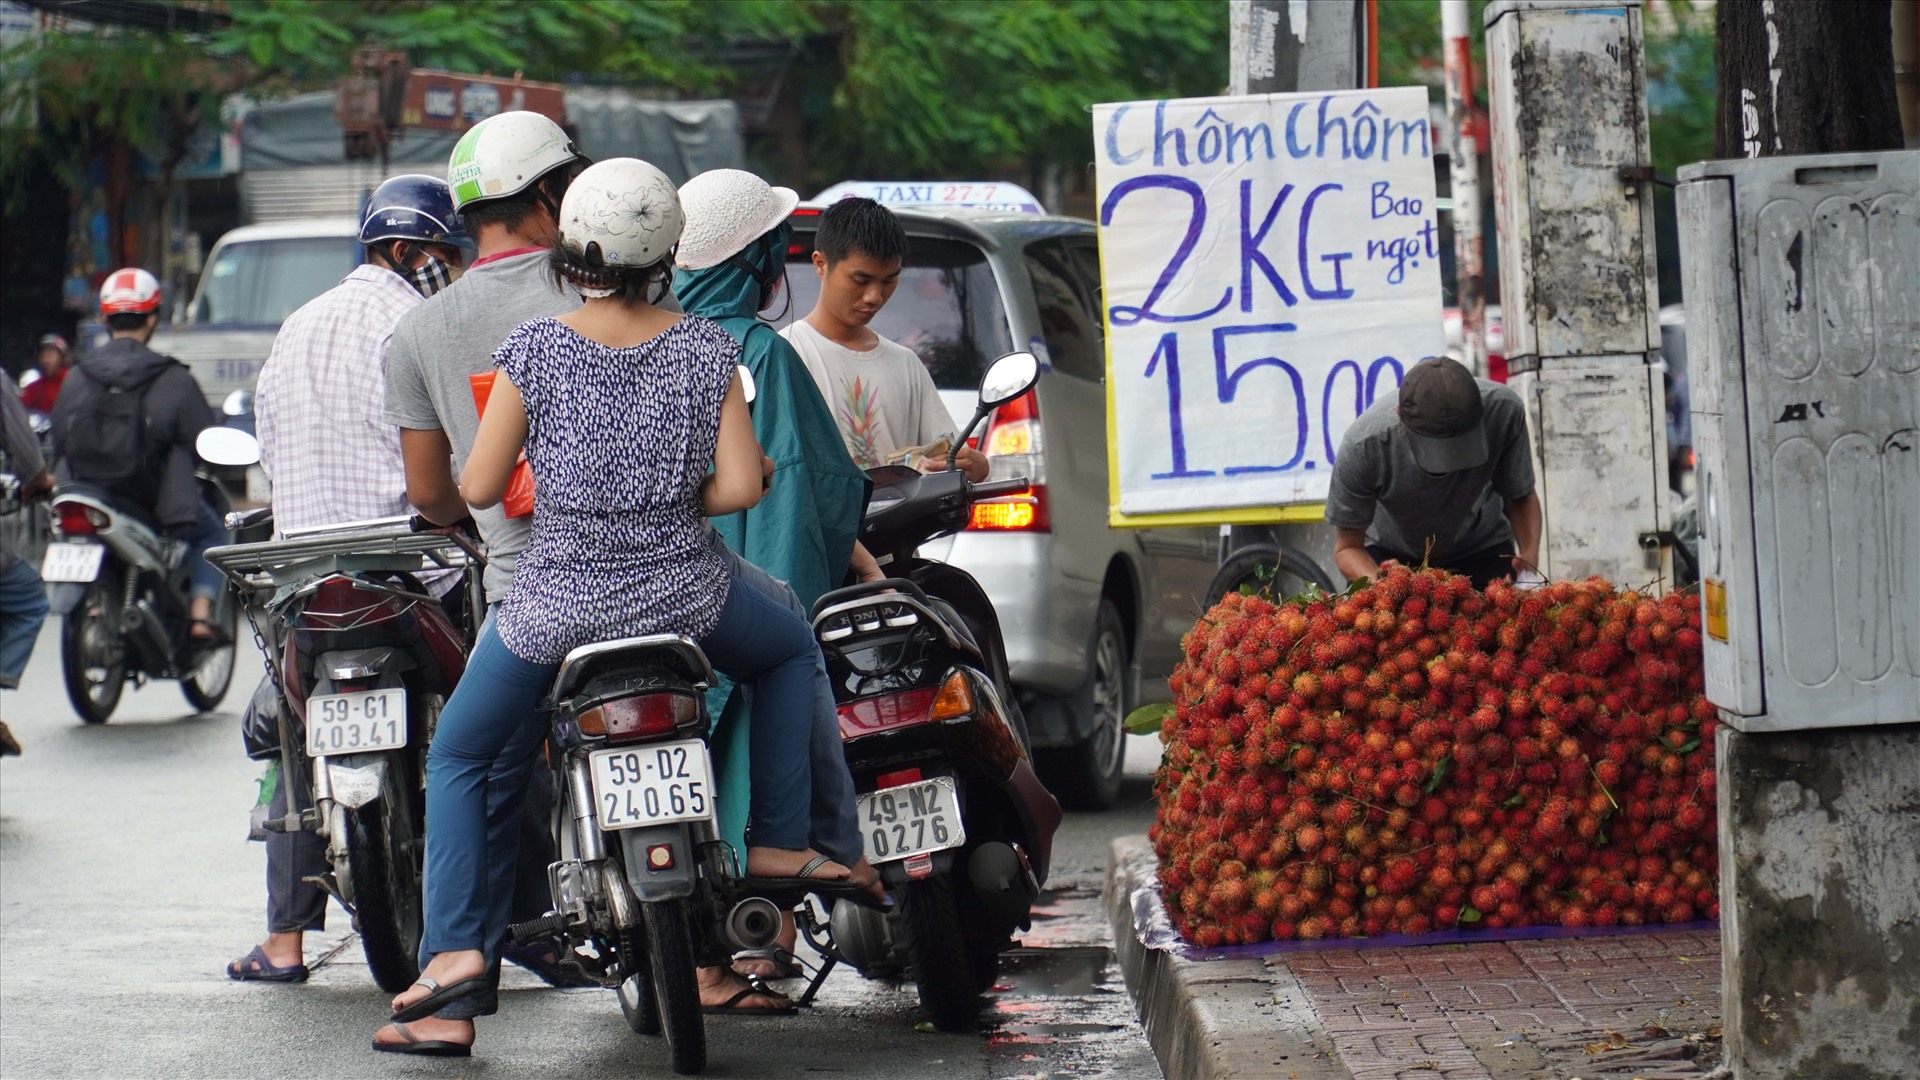 Còn tại tuyến đường Lý Thường Kiệt, chôm chôm được mời chào với giá 15.000 đồng cho 2 kg.